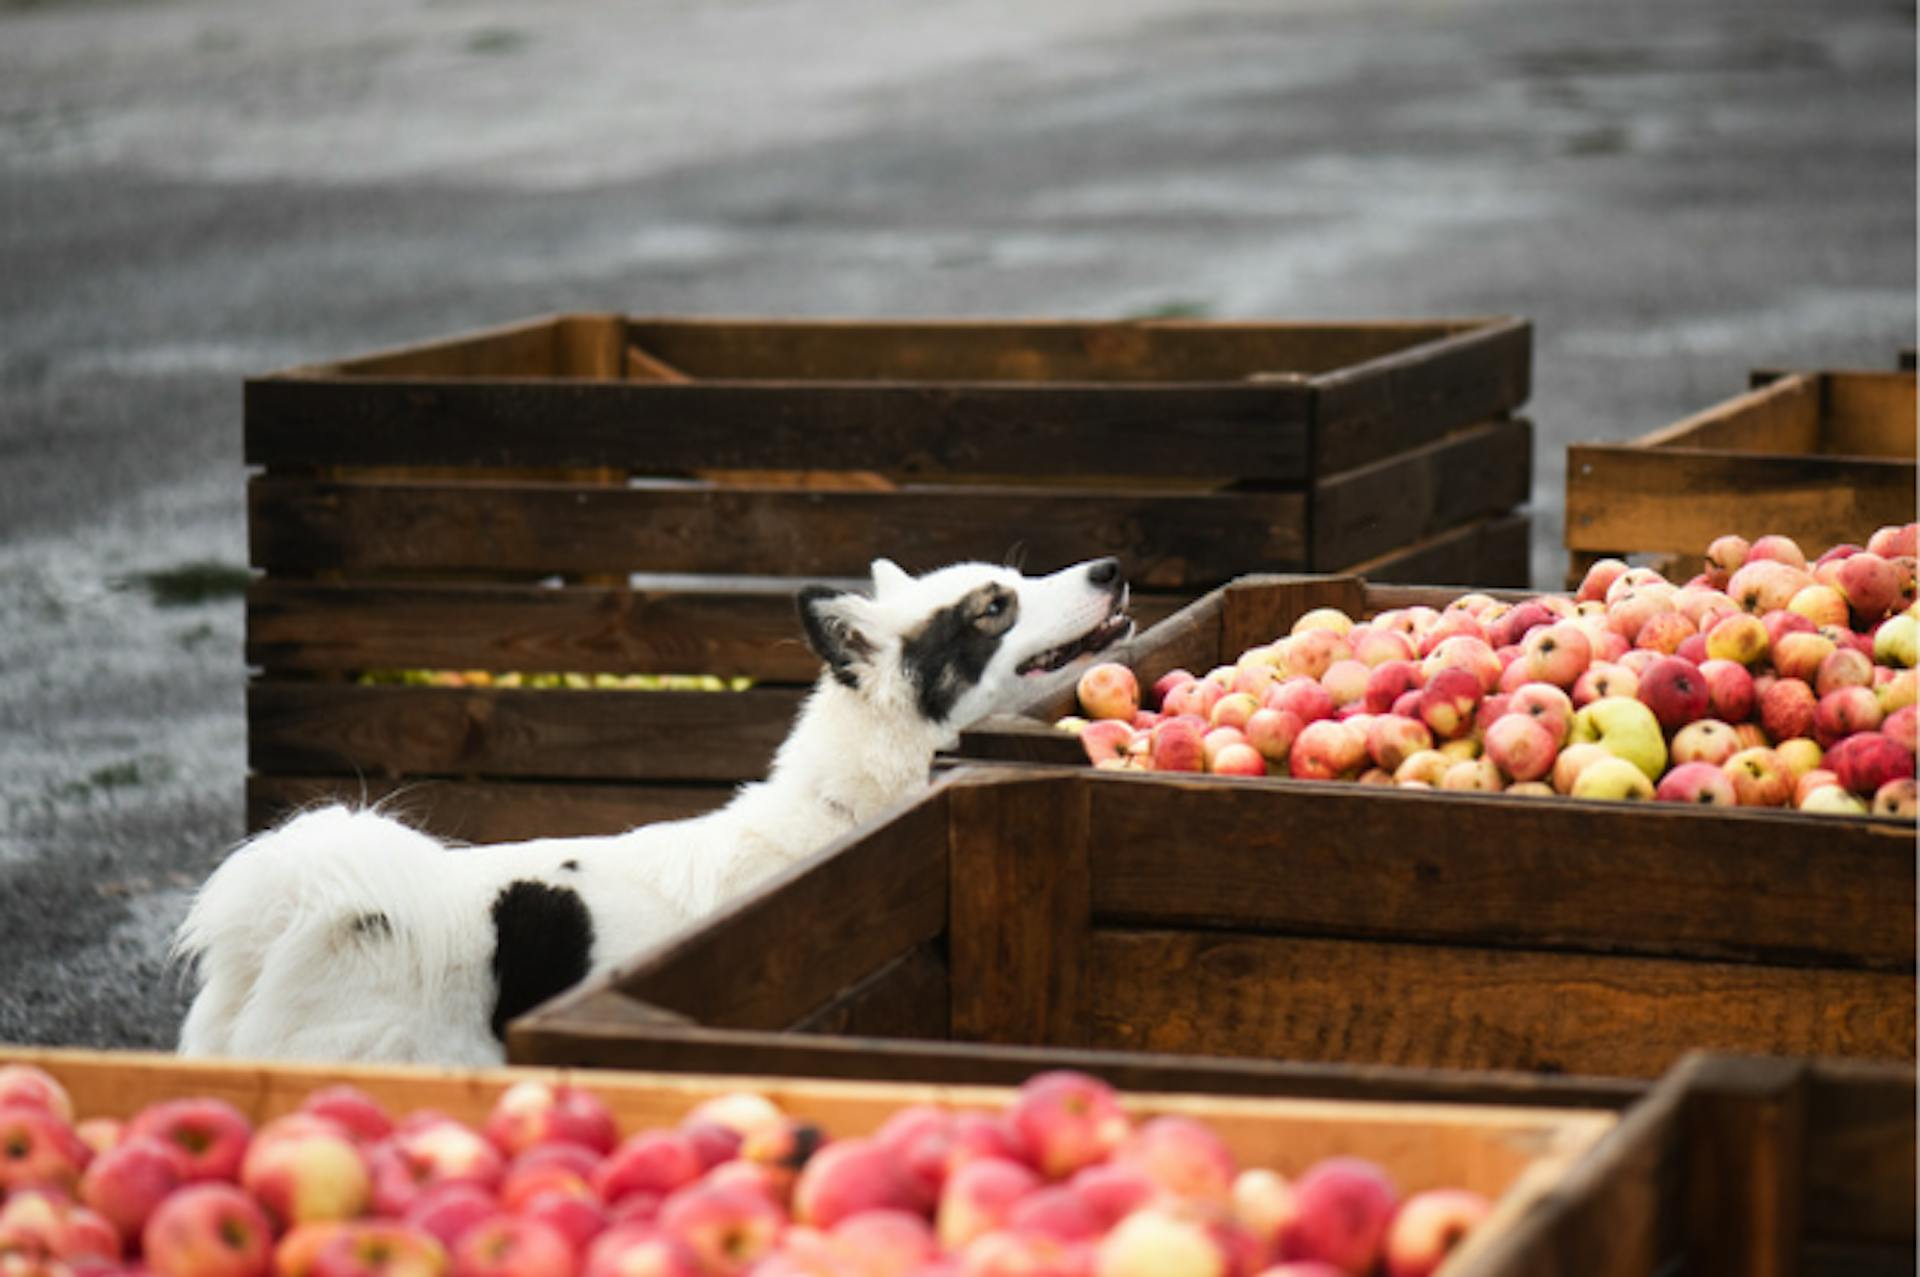 chien qui renifle des pommes dans une caisse